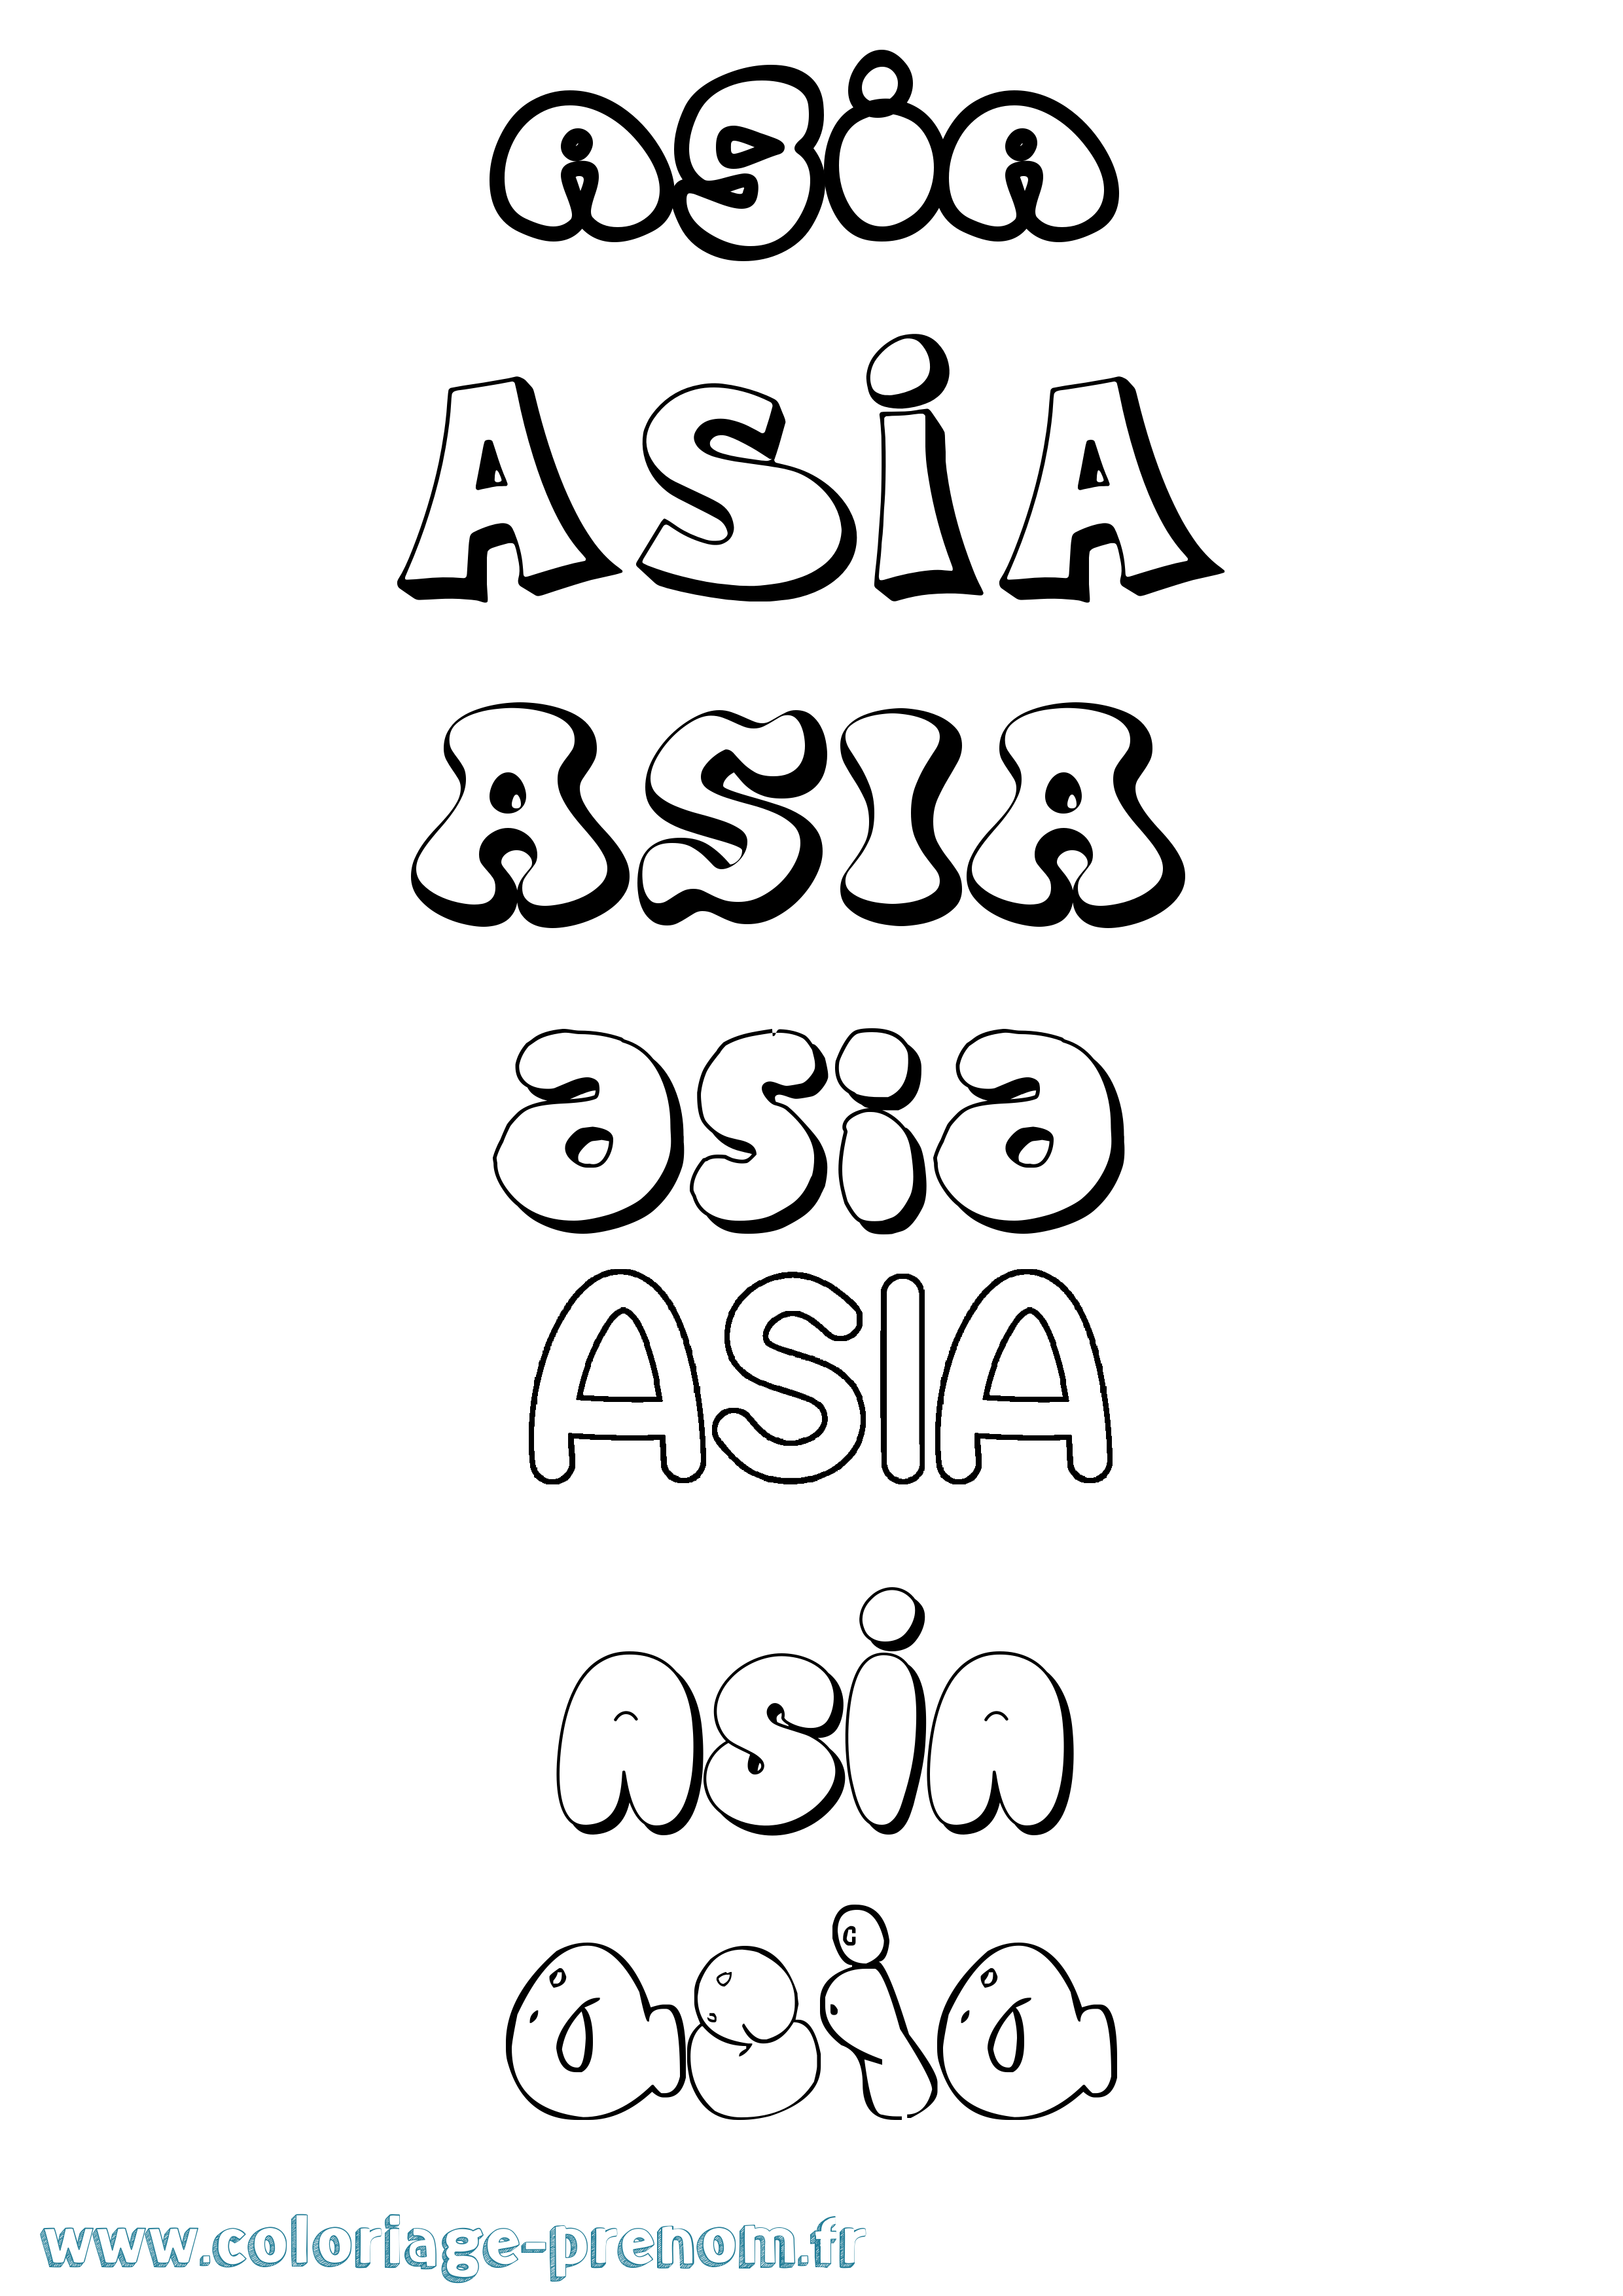 Coloriage prénom Asia Bubble